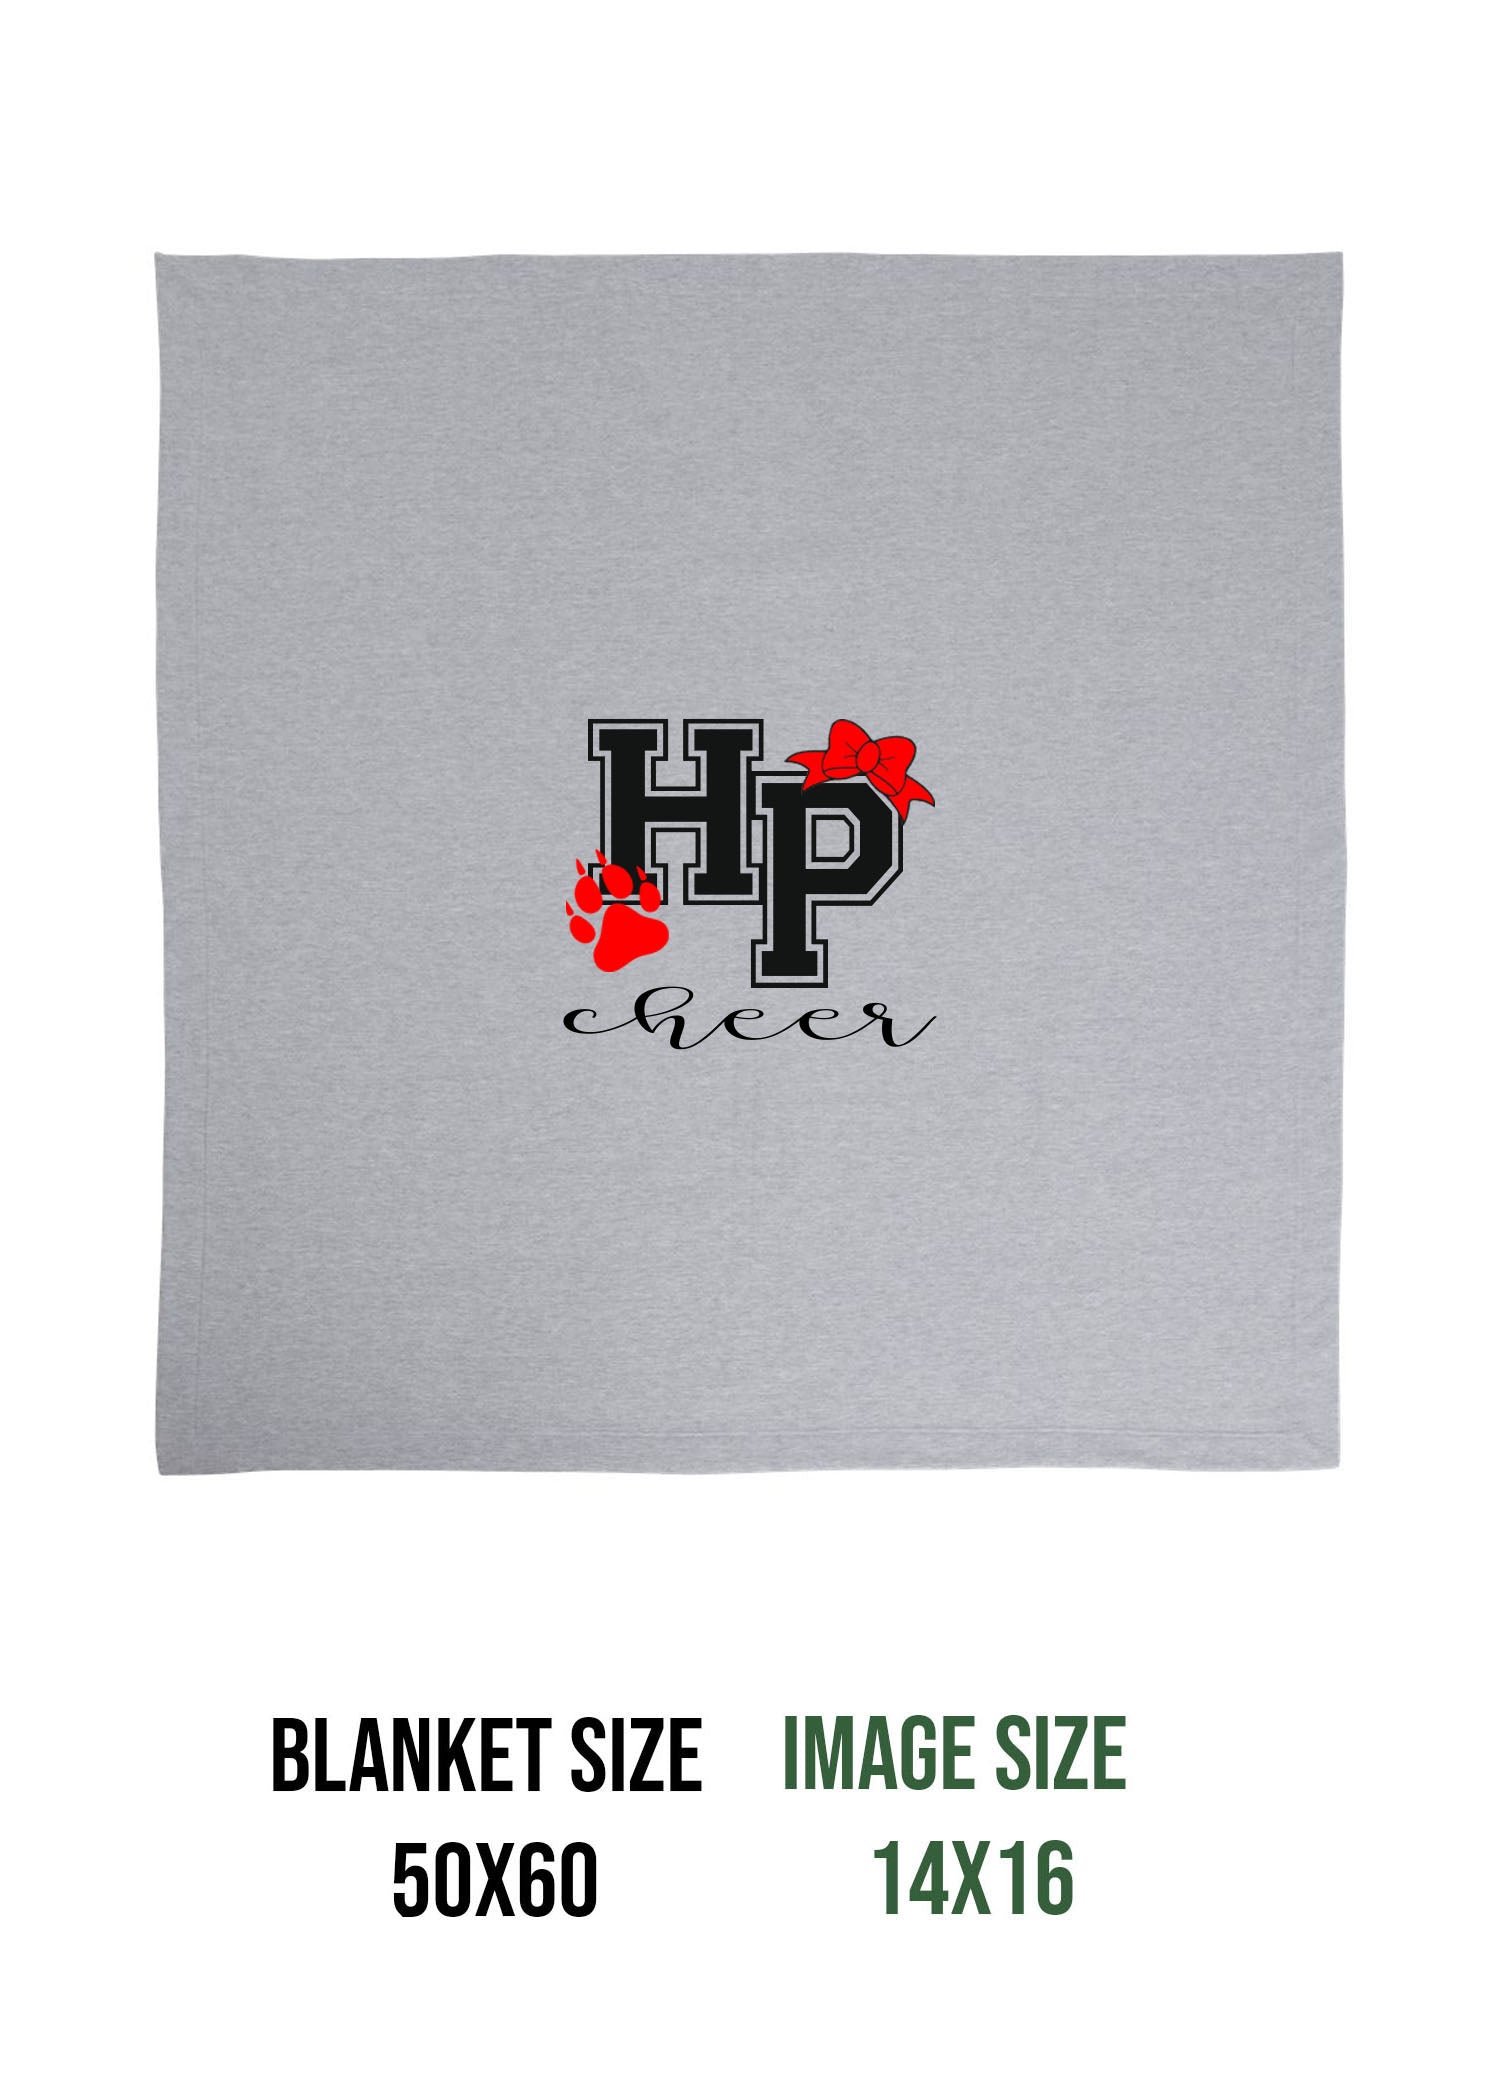 High Point Cheer Design 3 Blanket